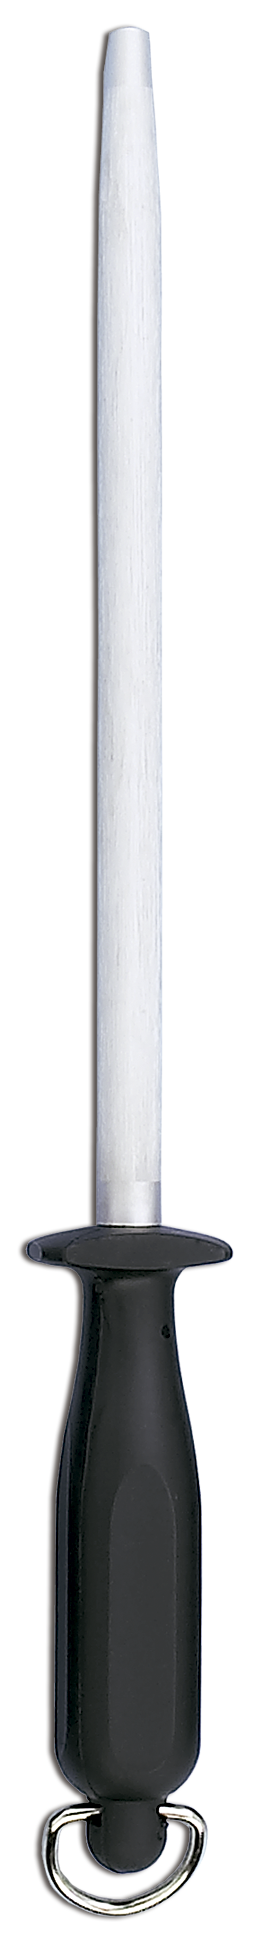 Afilador de cuchillos Chaira Arcos 278515 con hoja de acero al carbono de  30 cm y mango de Polipropileno de color amarillo con funda hoja ø 13 mm